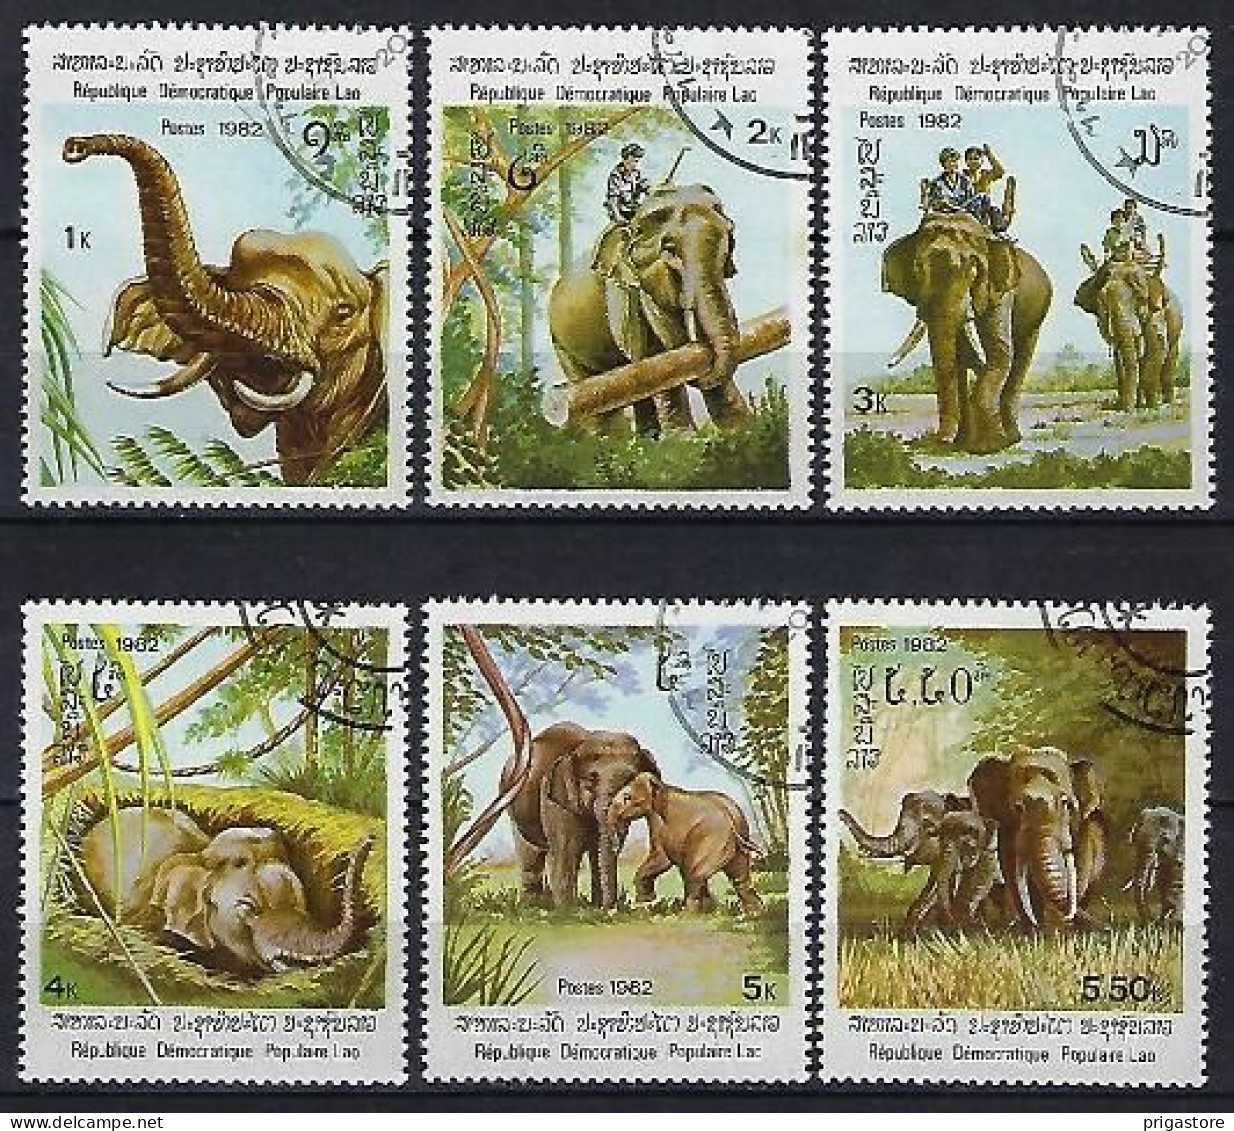 Eléphants Laos 1982 (604) Yvert 376 à 381 Oblitérés Used - Elephants